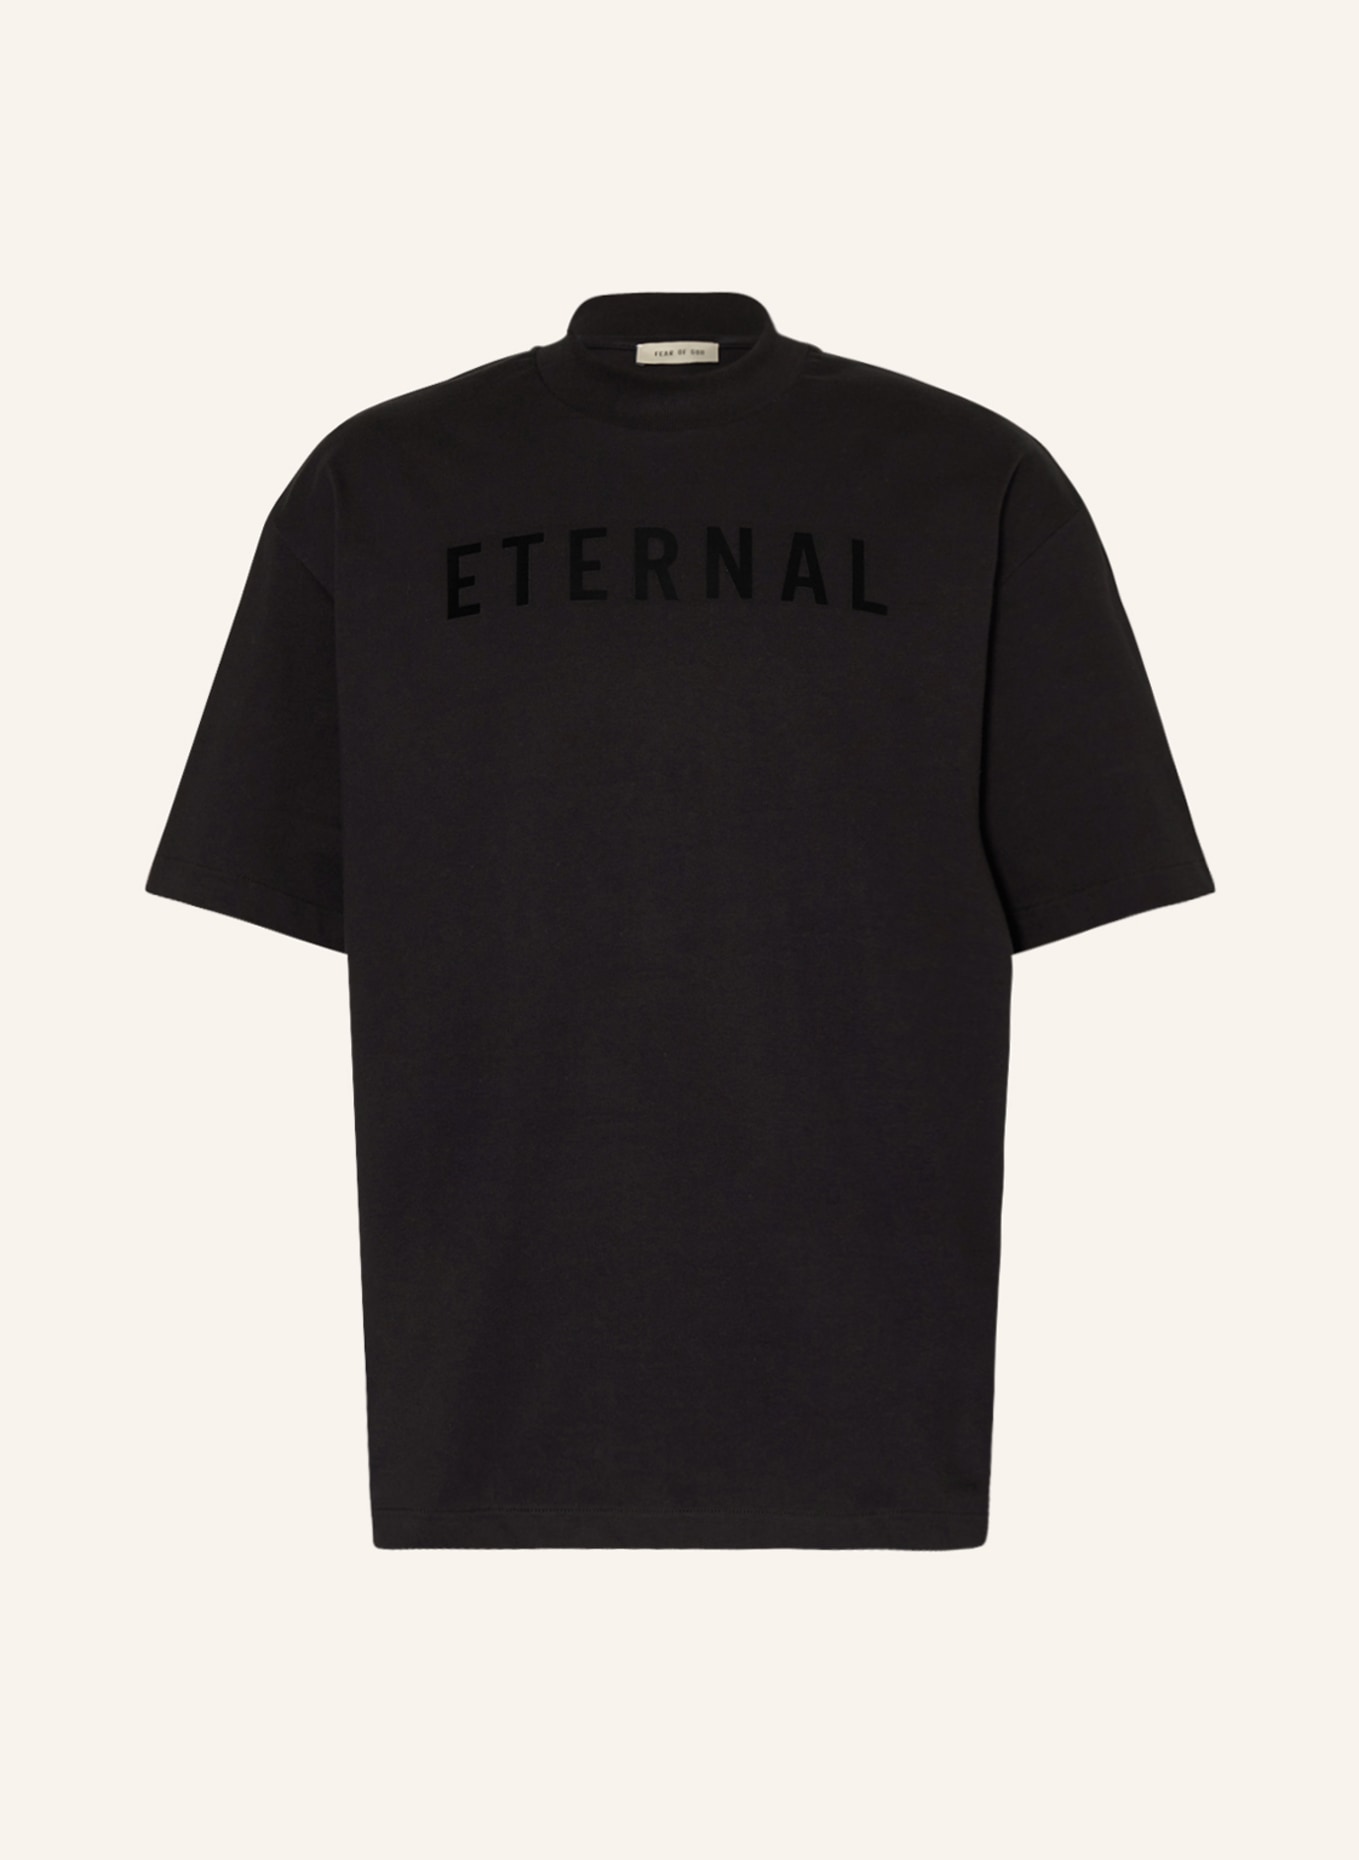 FEAR OF GOD T-shirt, Color: BLACK (Image 1)